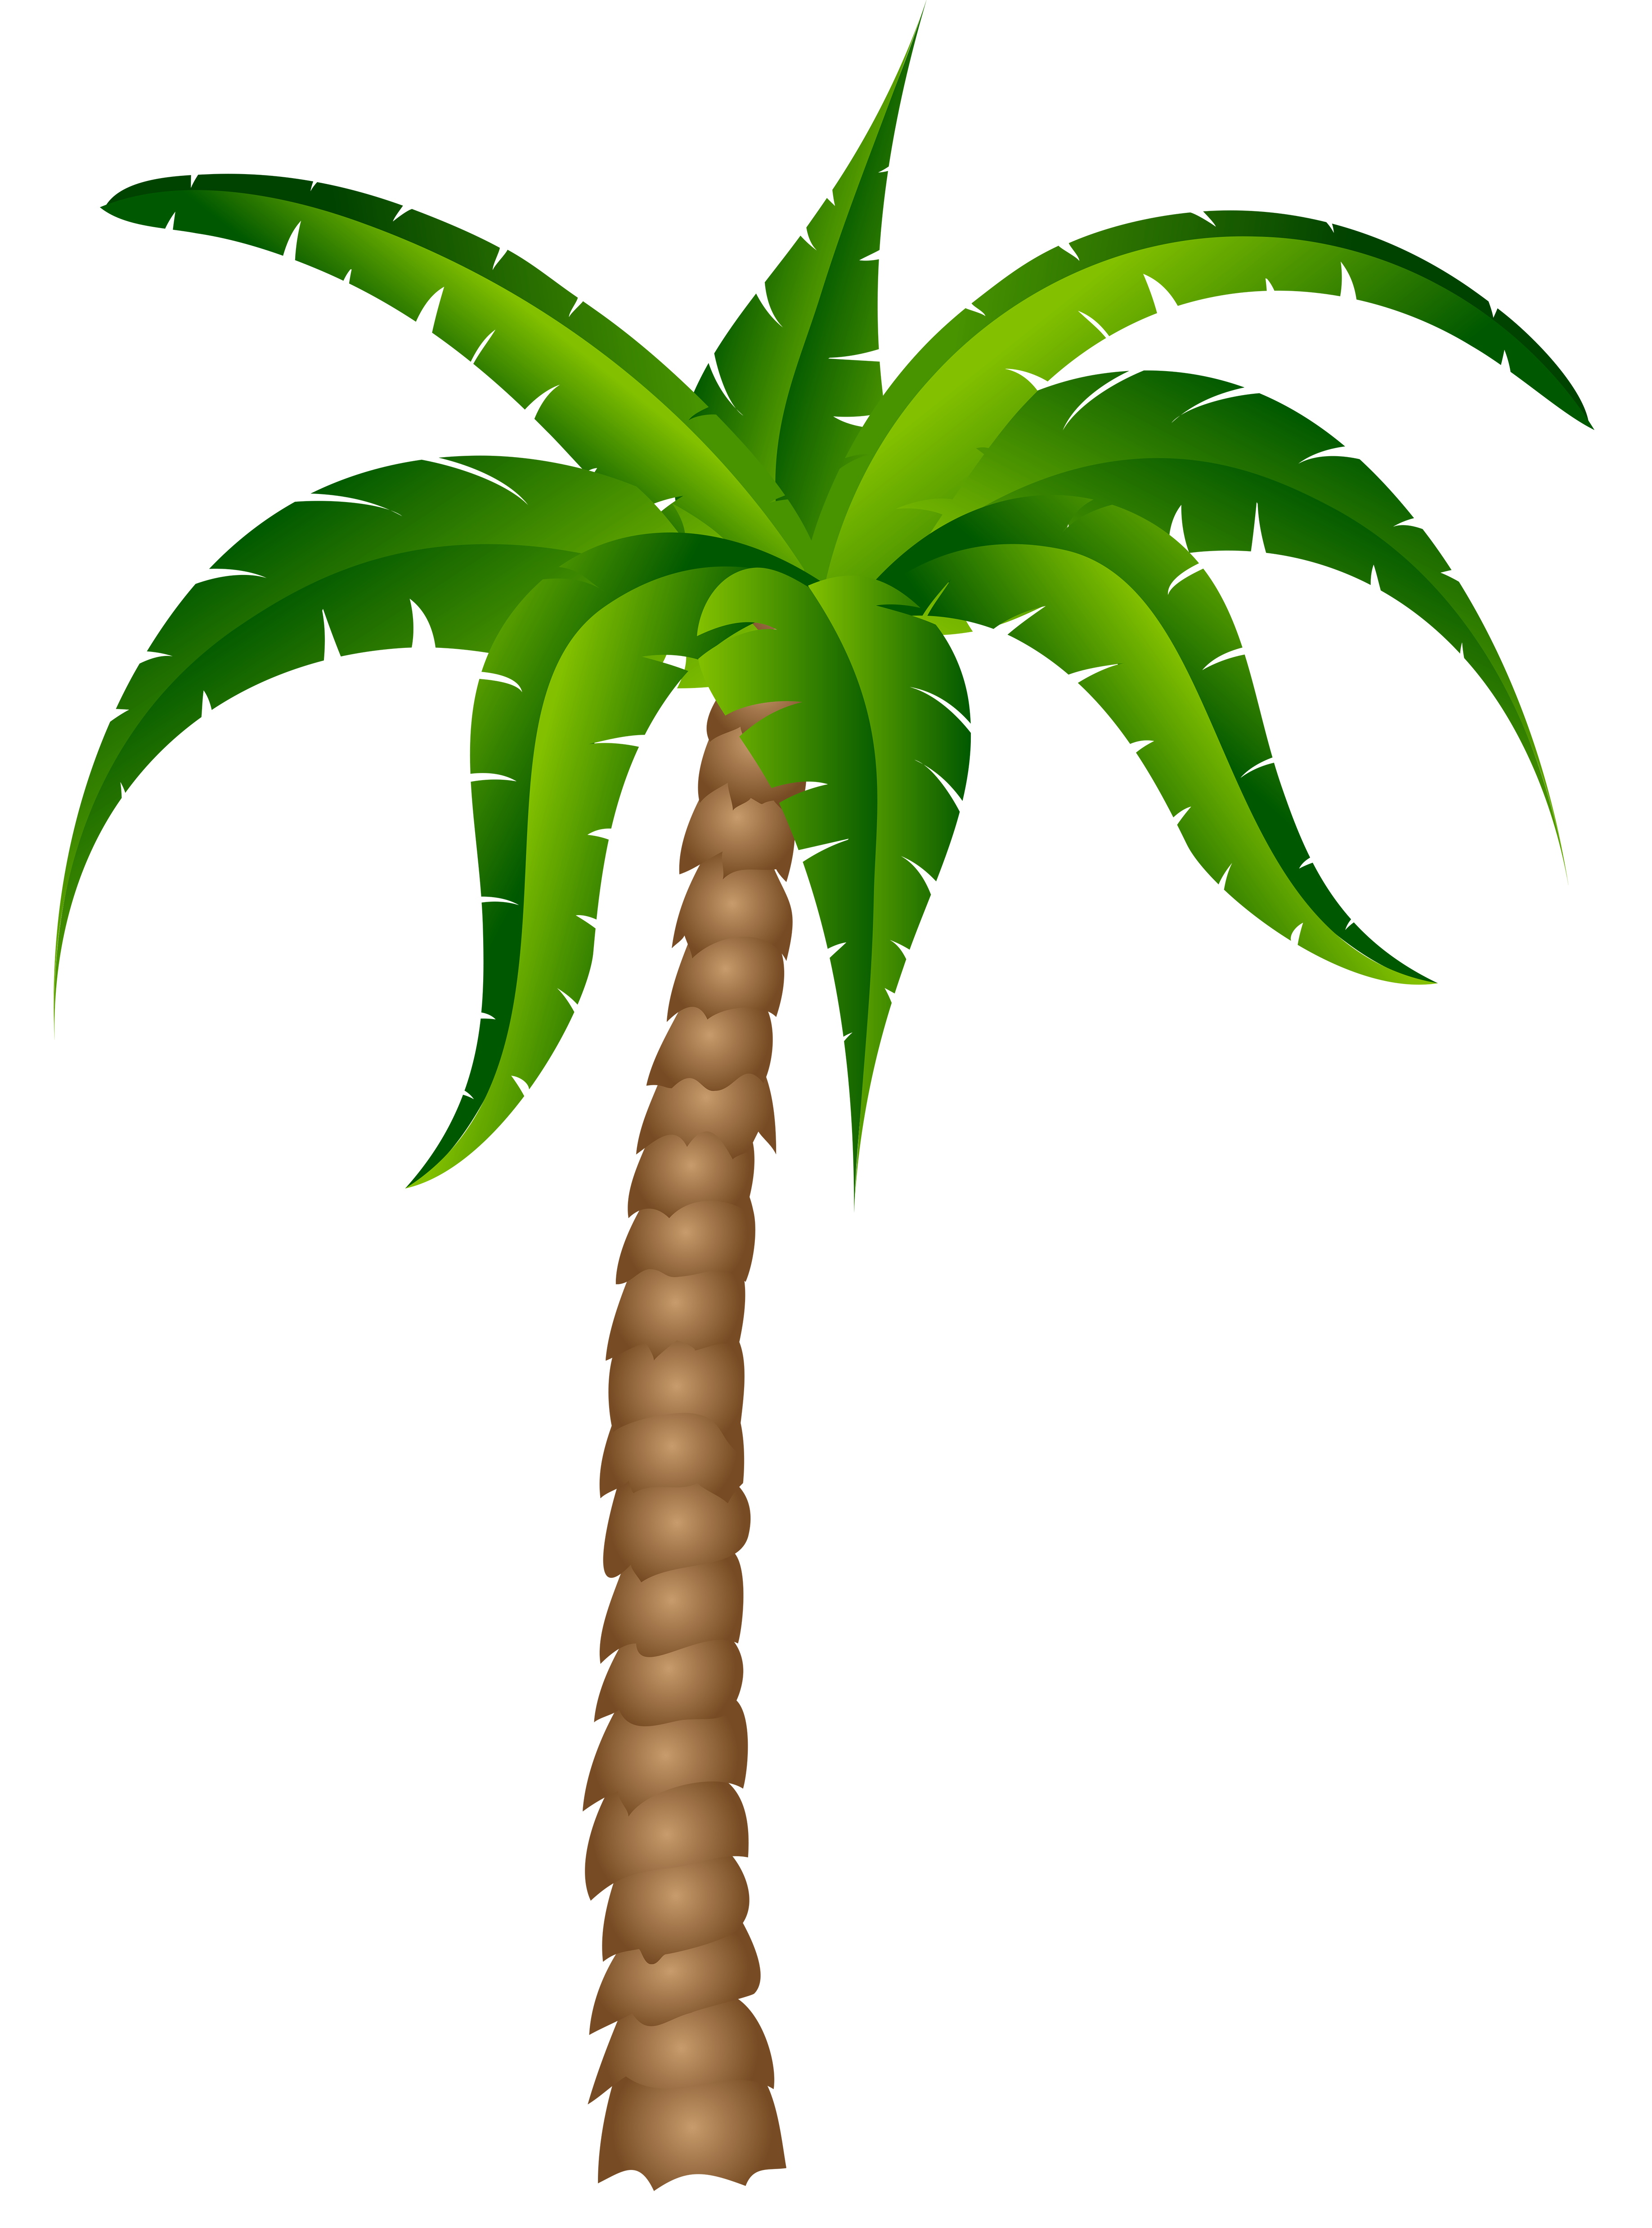 Surfboard palm tree.